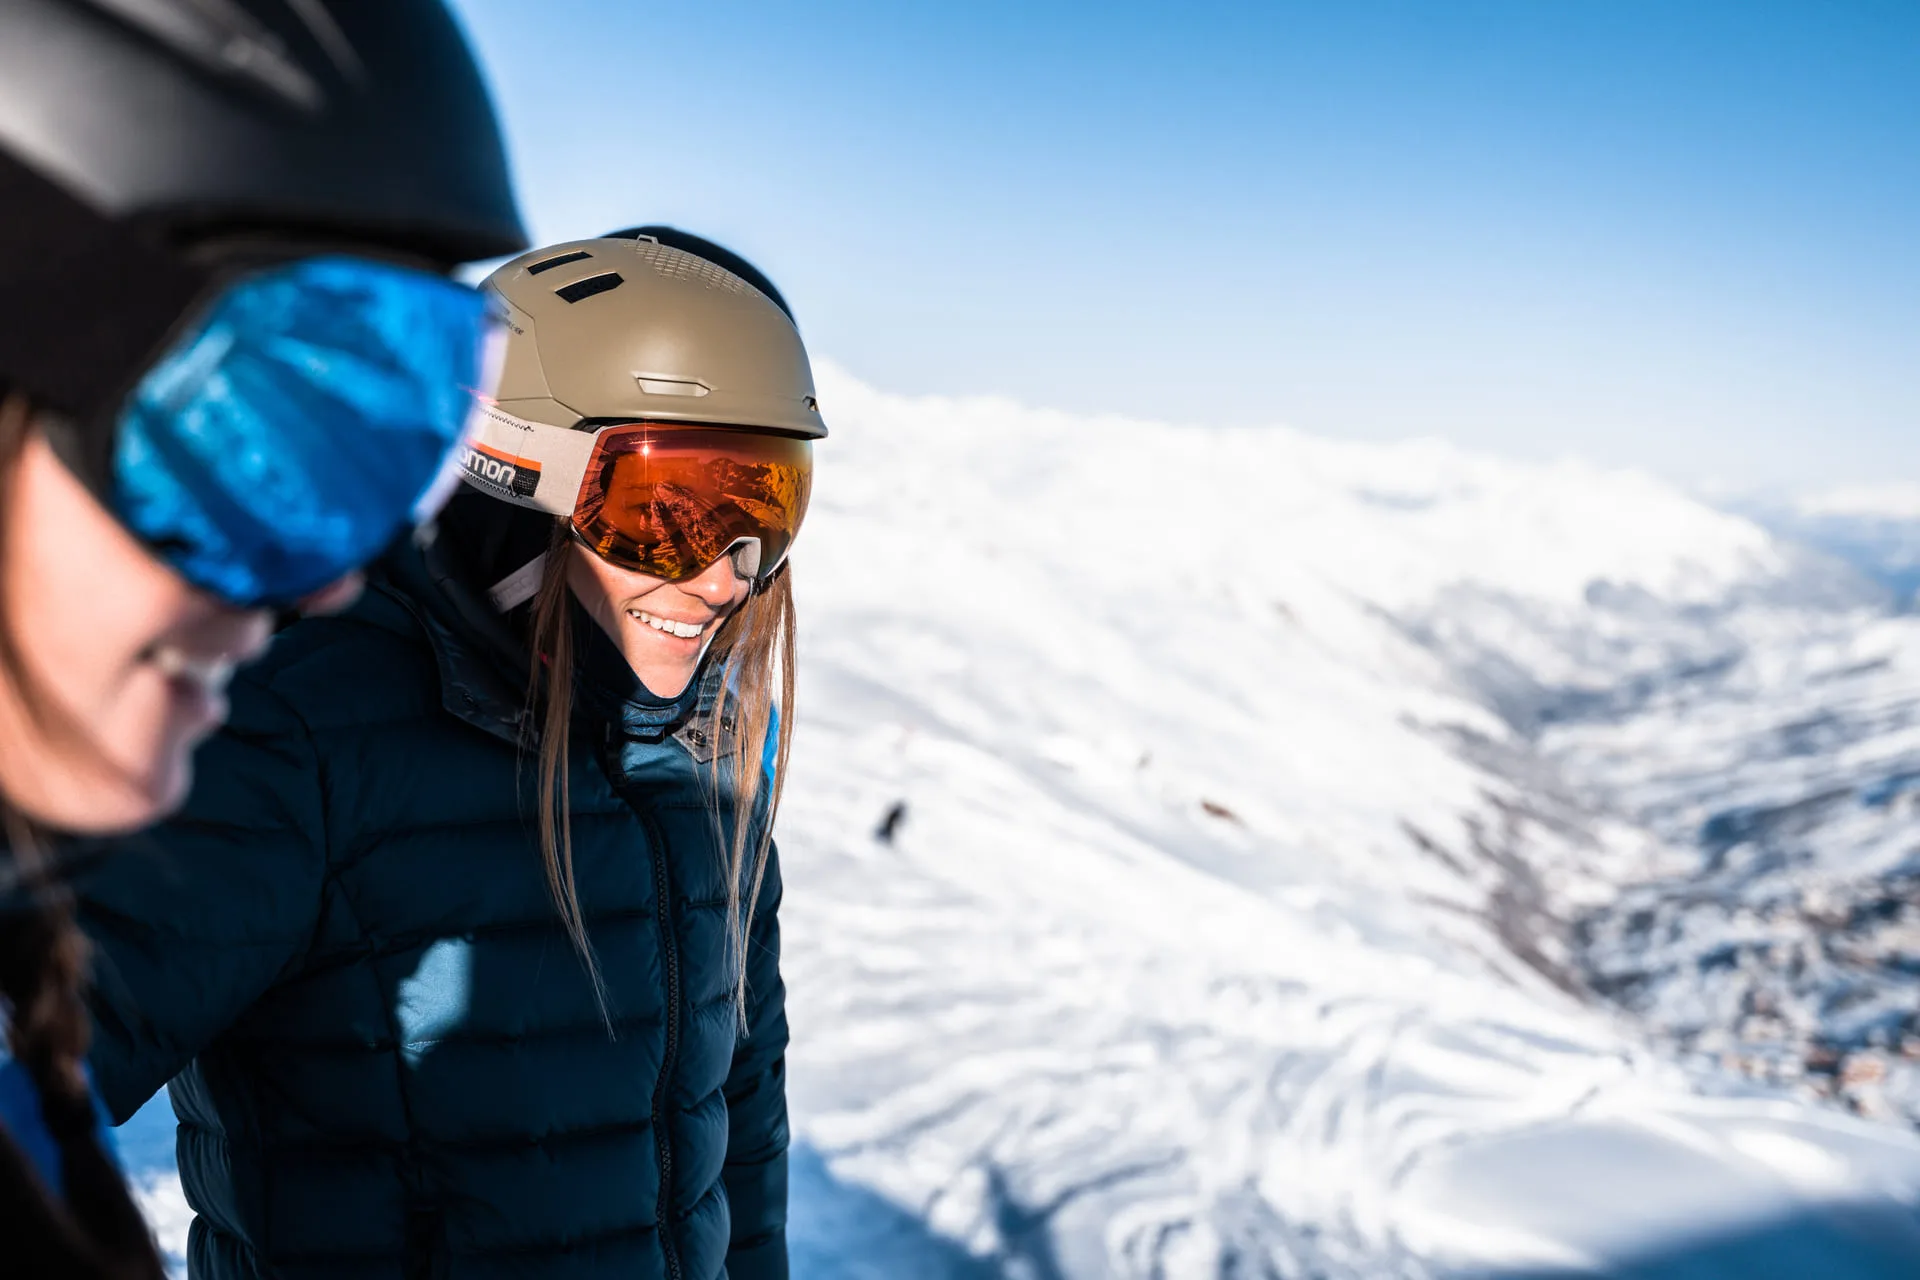 Gafas de snowboard: cómo elegirlas